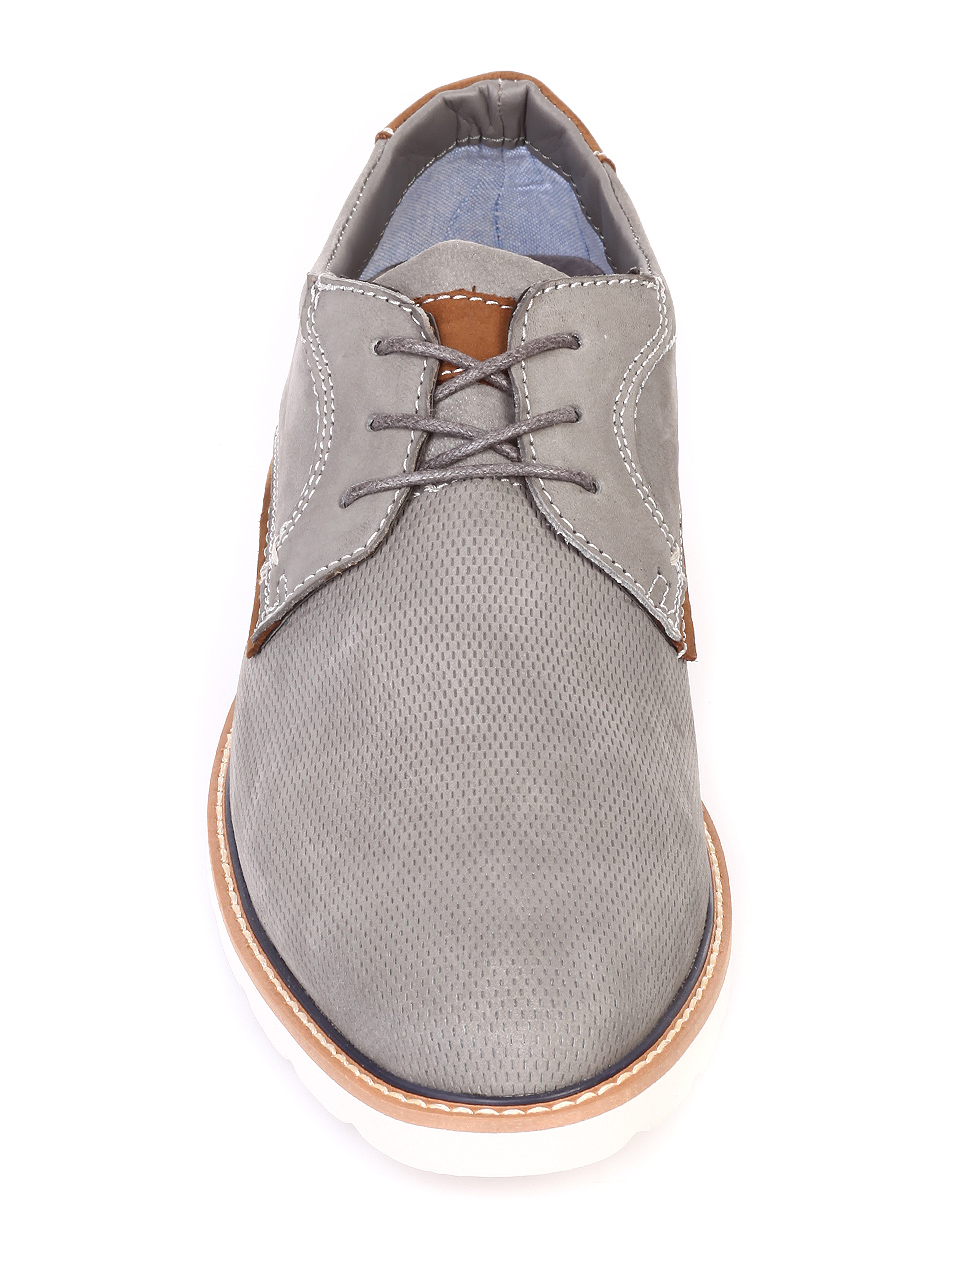 Ежедневни мъжки обувки от естествен набук 7W-19107 grey